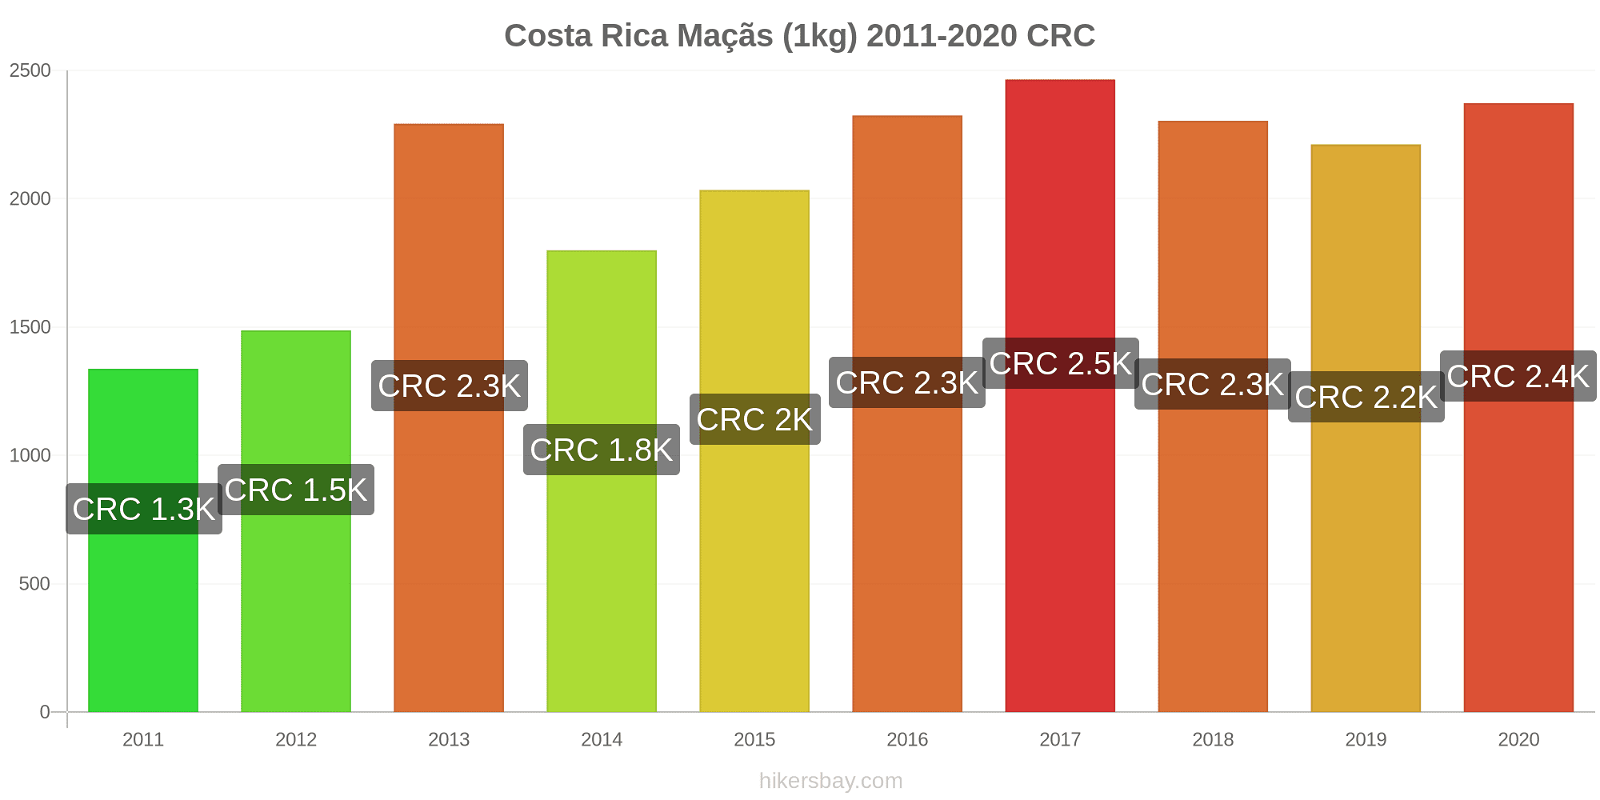 Costa Rica variação de preço Maçãs (1kg) hikersbay.com